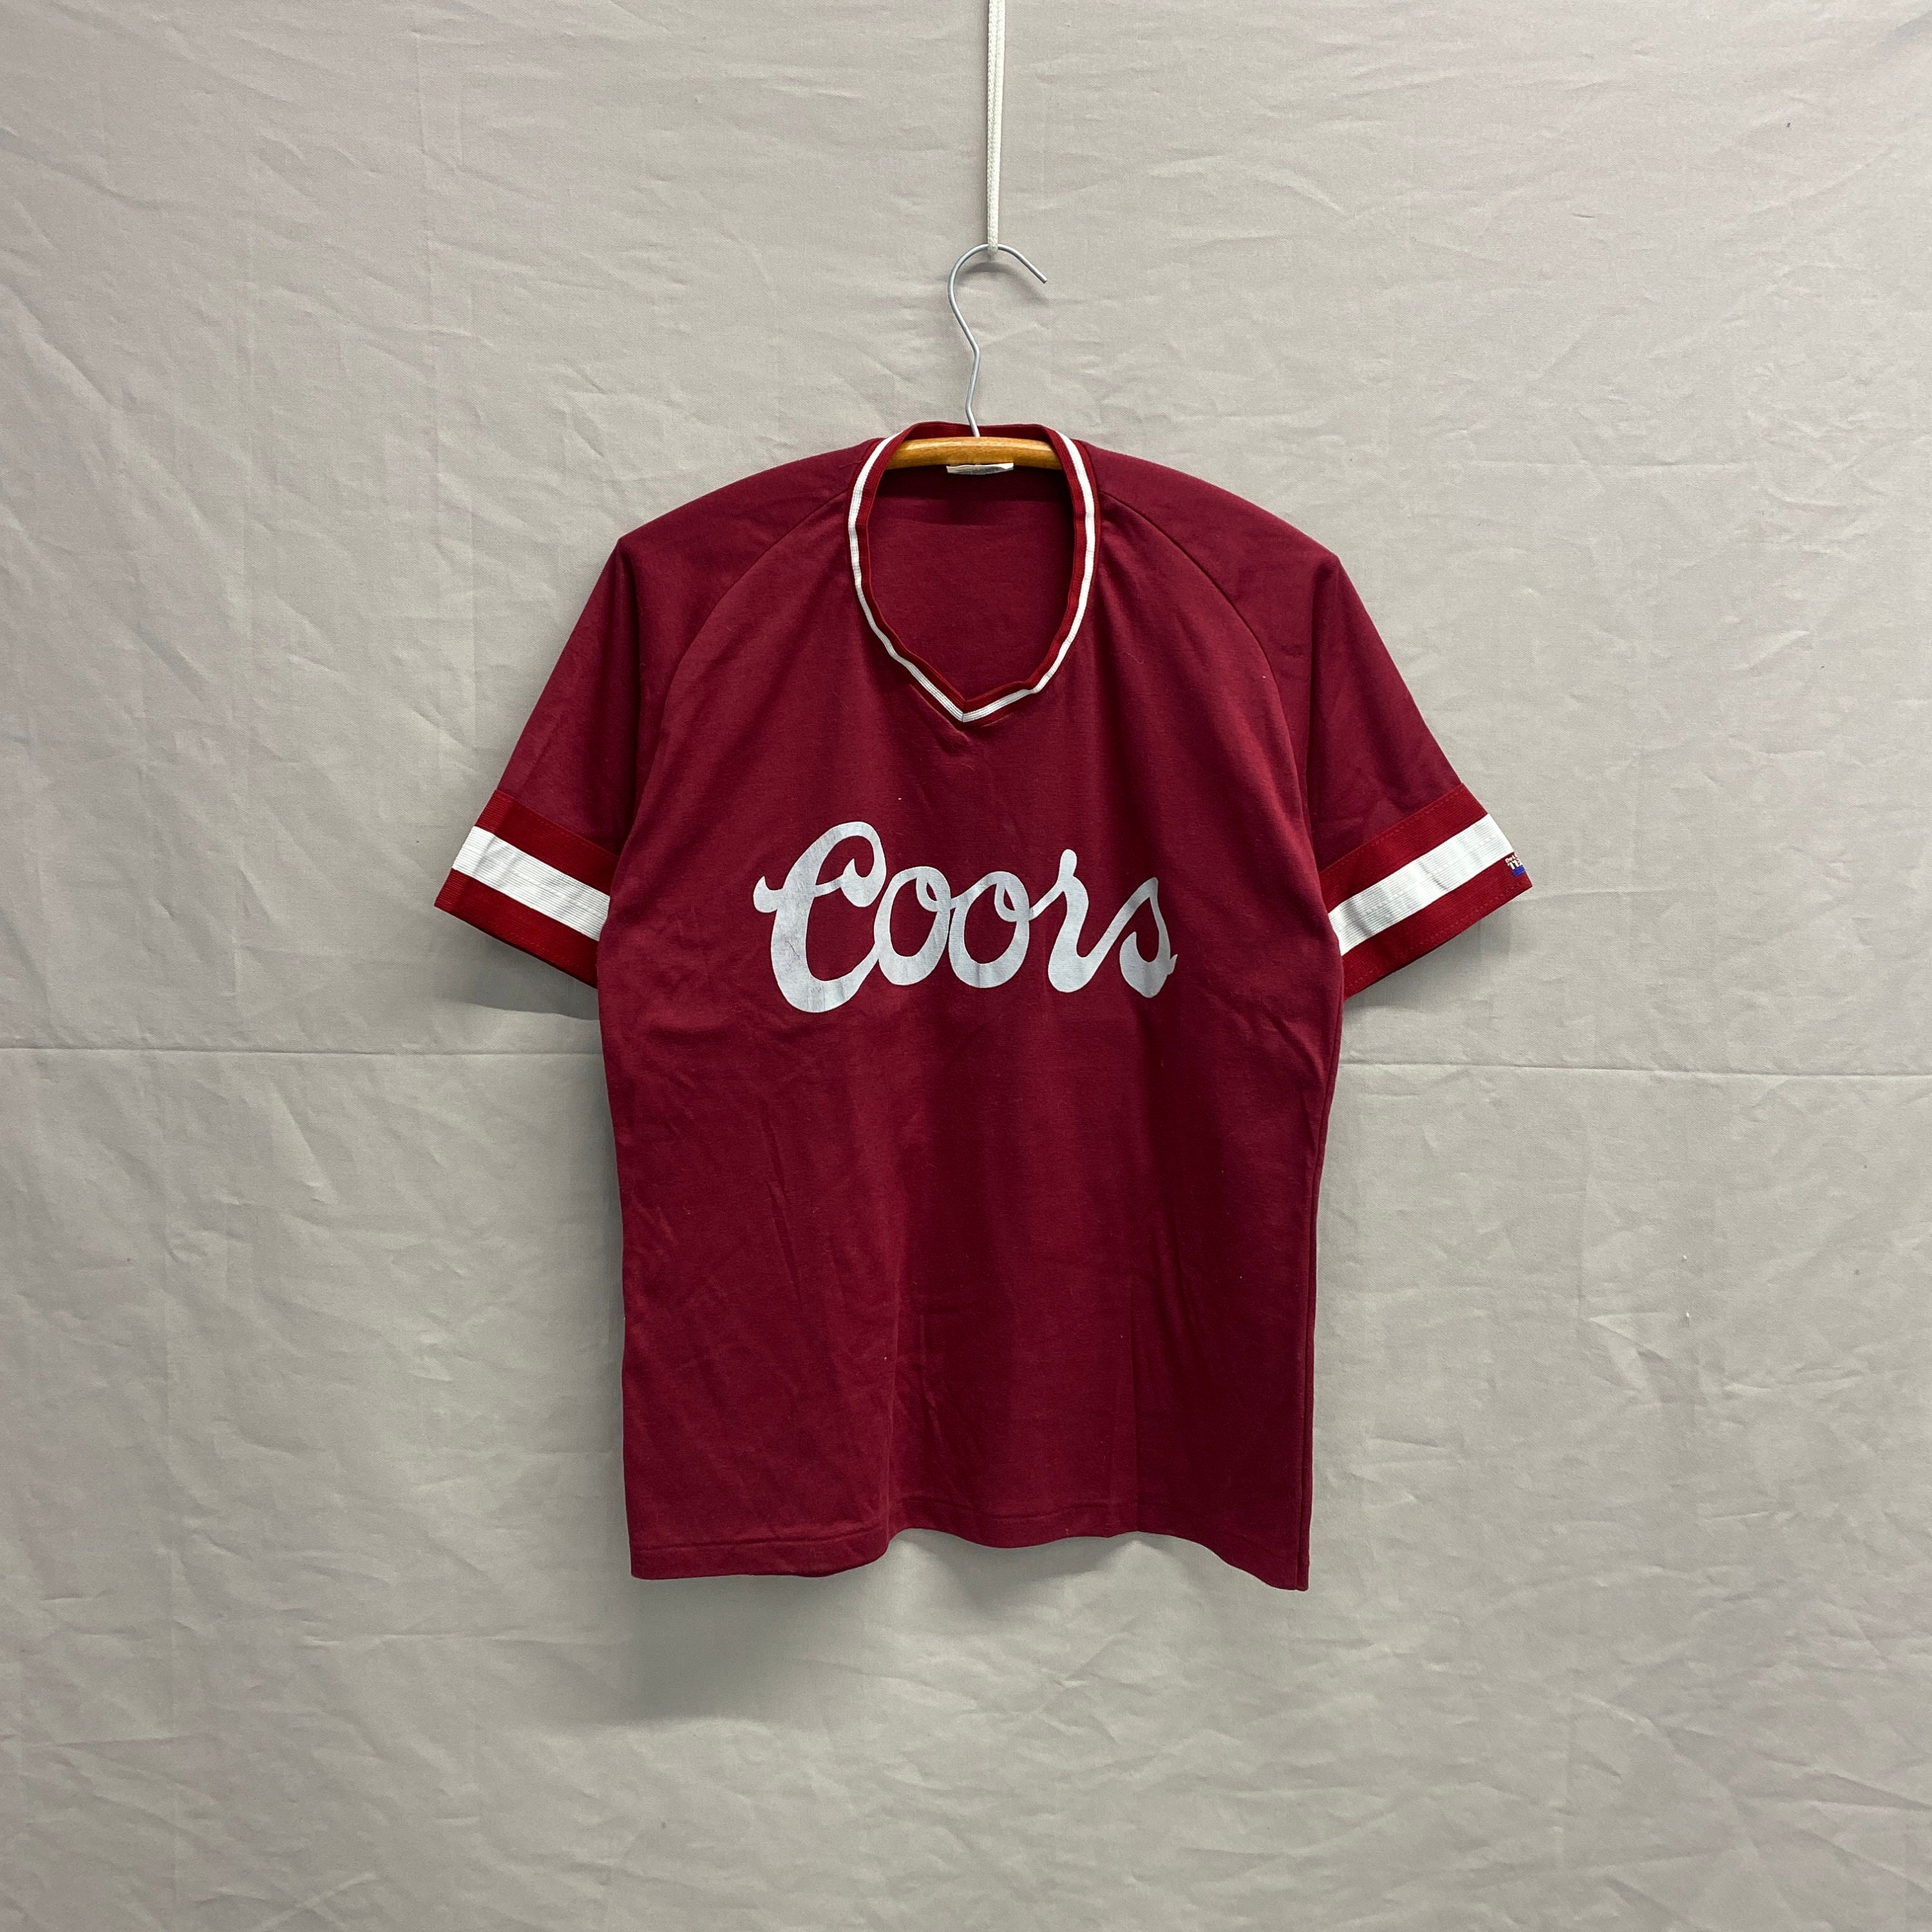 Coors Light Beer Logos Baseball Jersey Shirt Beer Lovers Coors Light Gift -  Best Seller Shirts Design In Usa